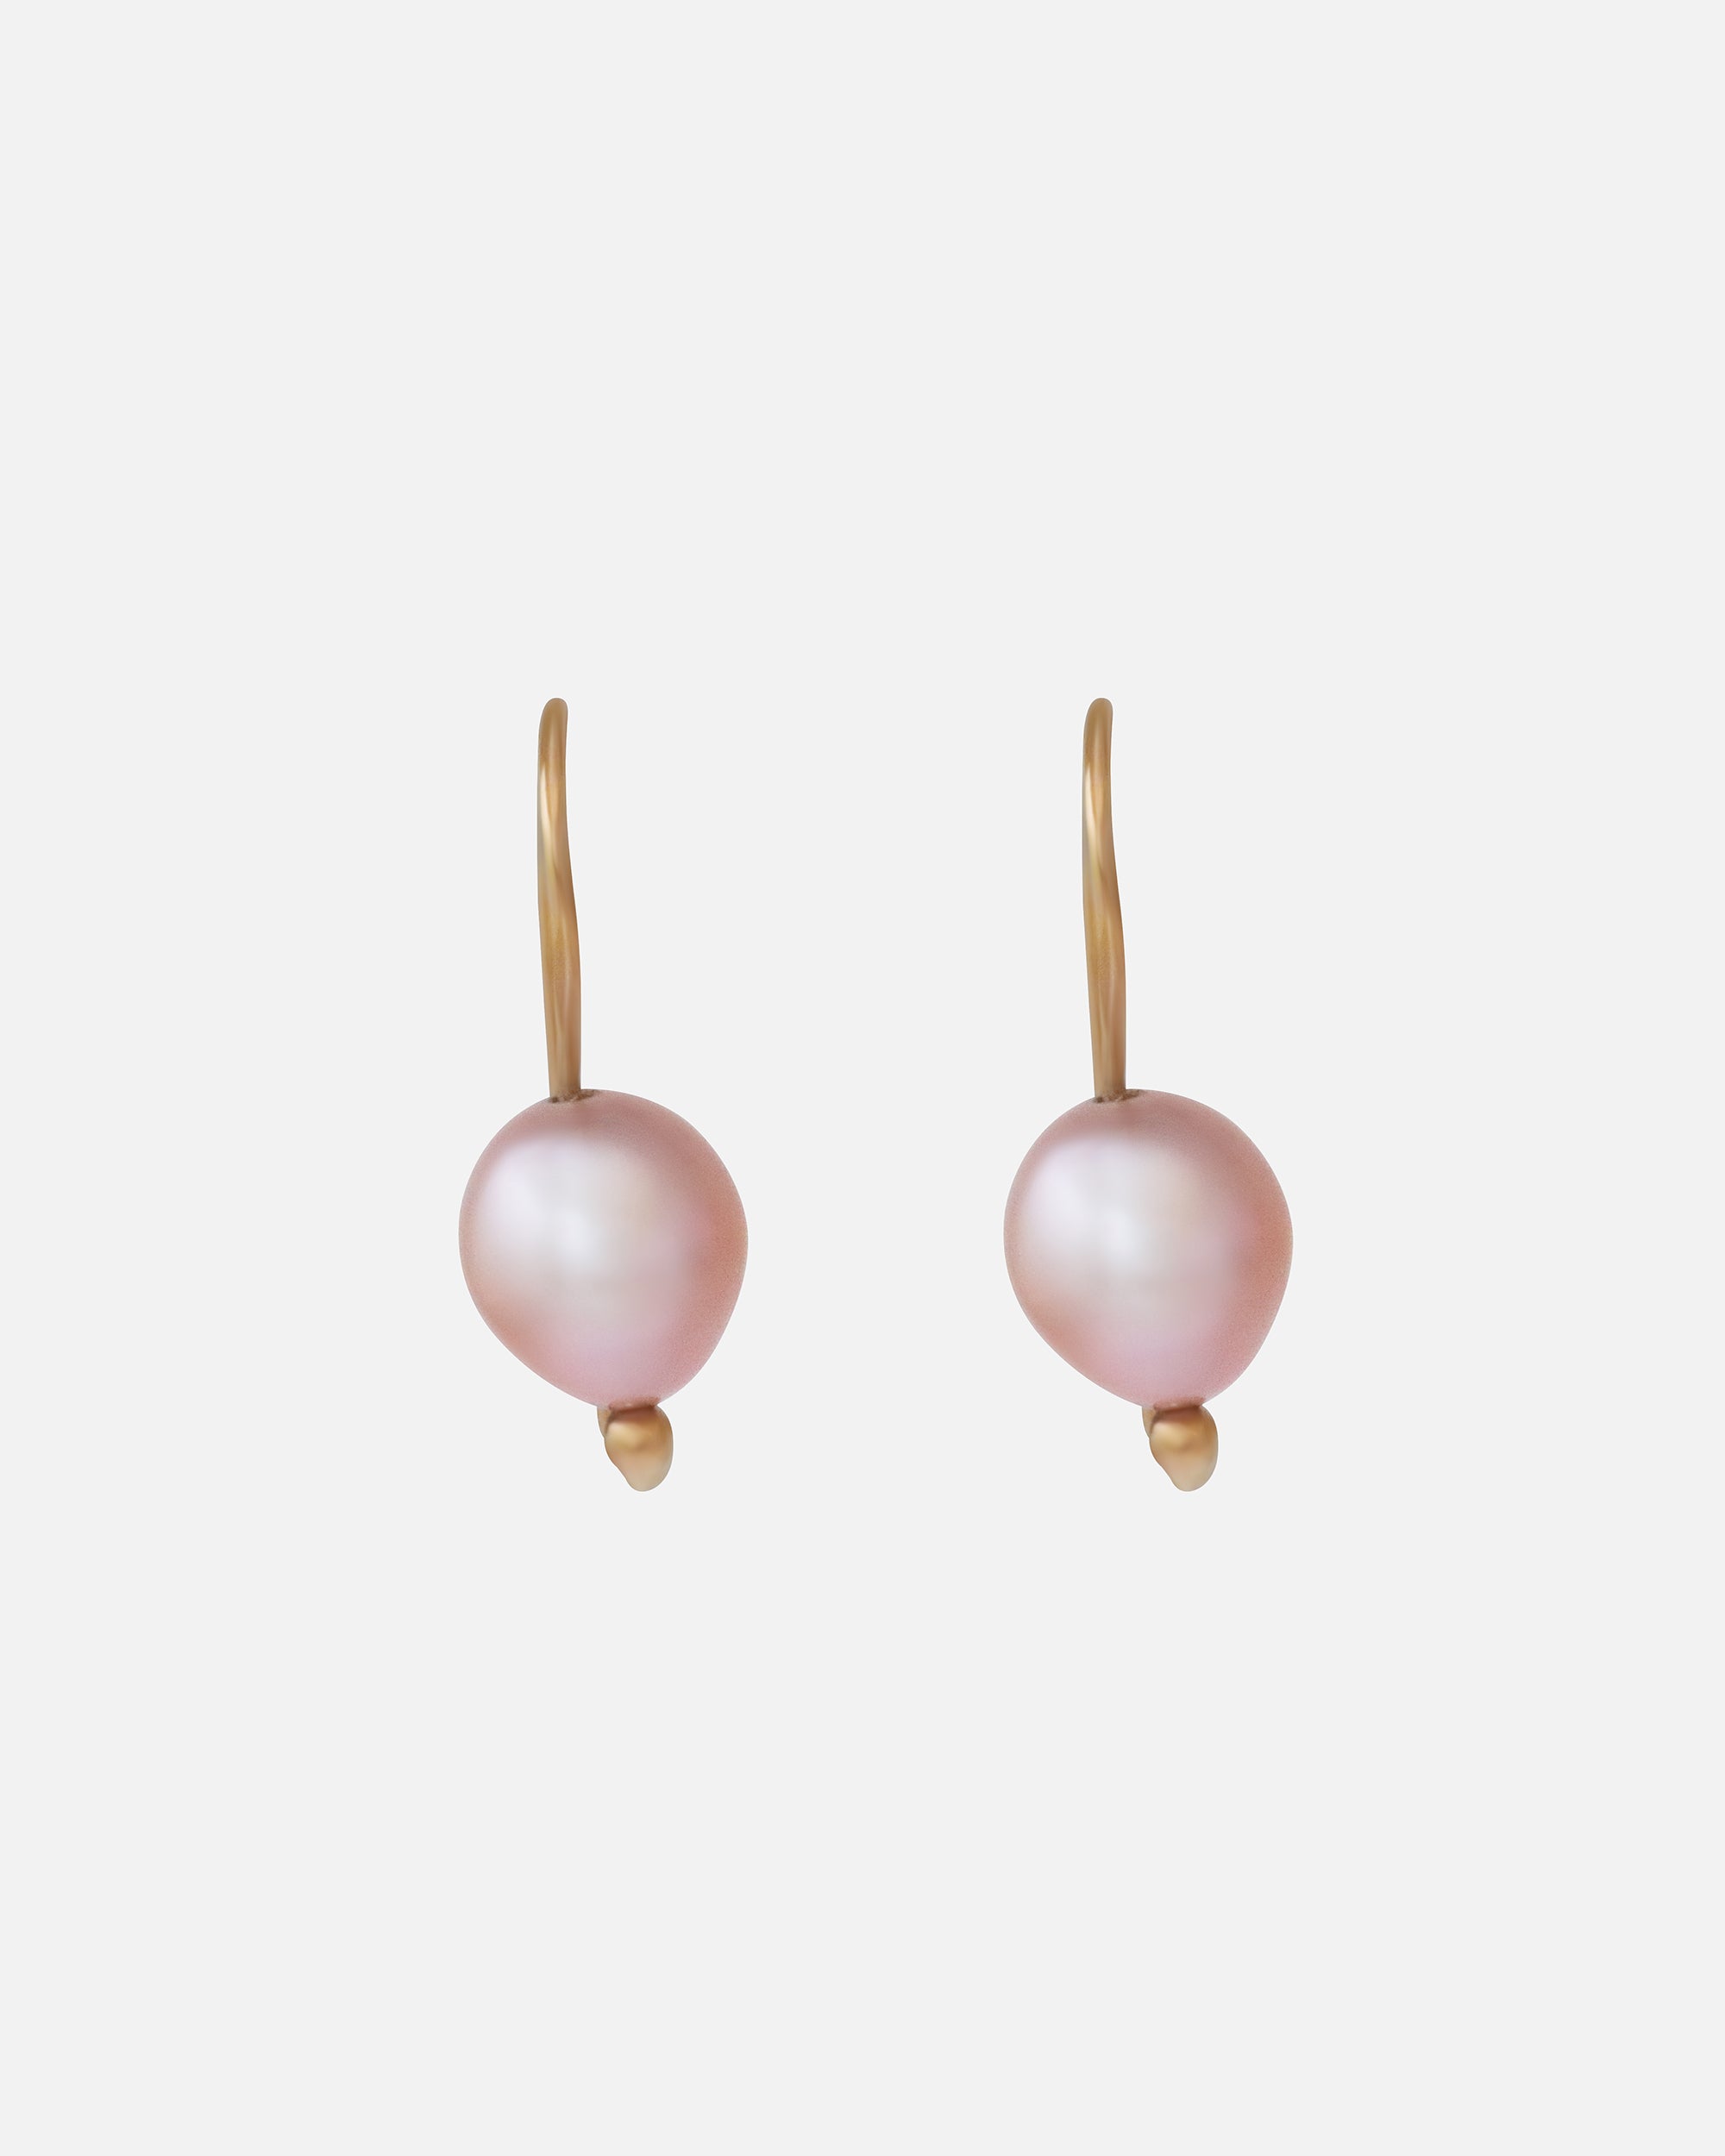 Swan Pearl Earrings By Tricia Kirkland in earrings Category